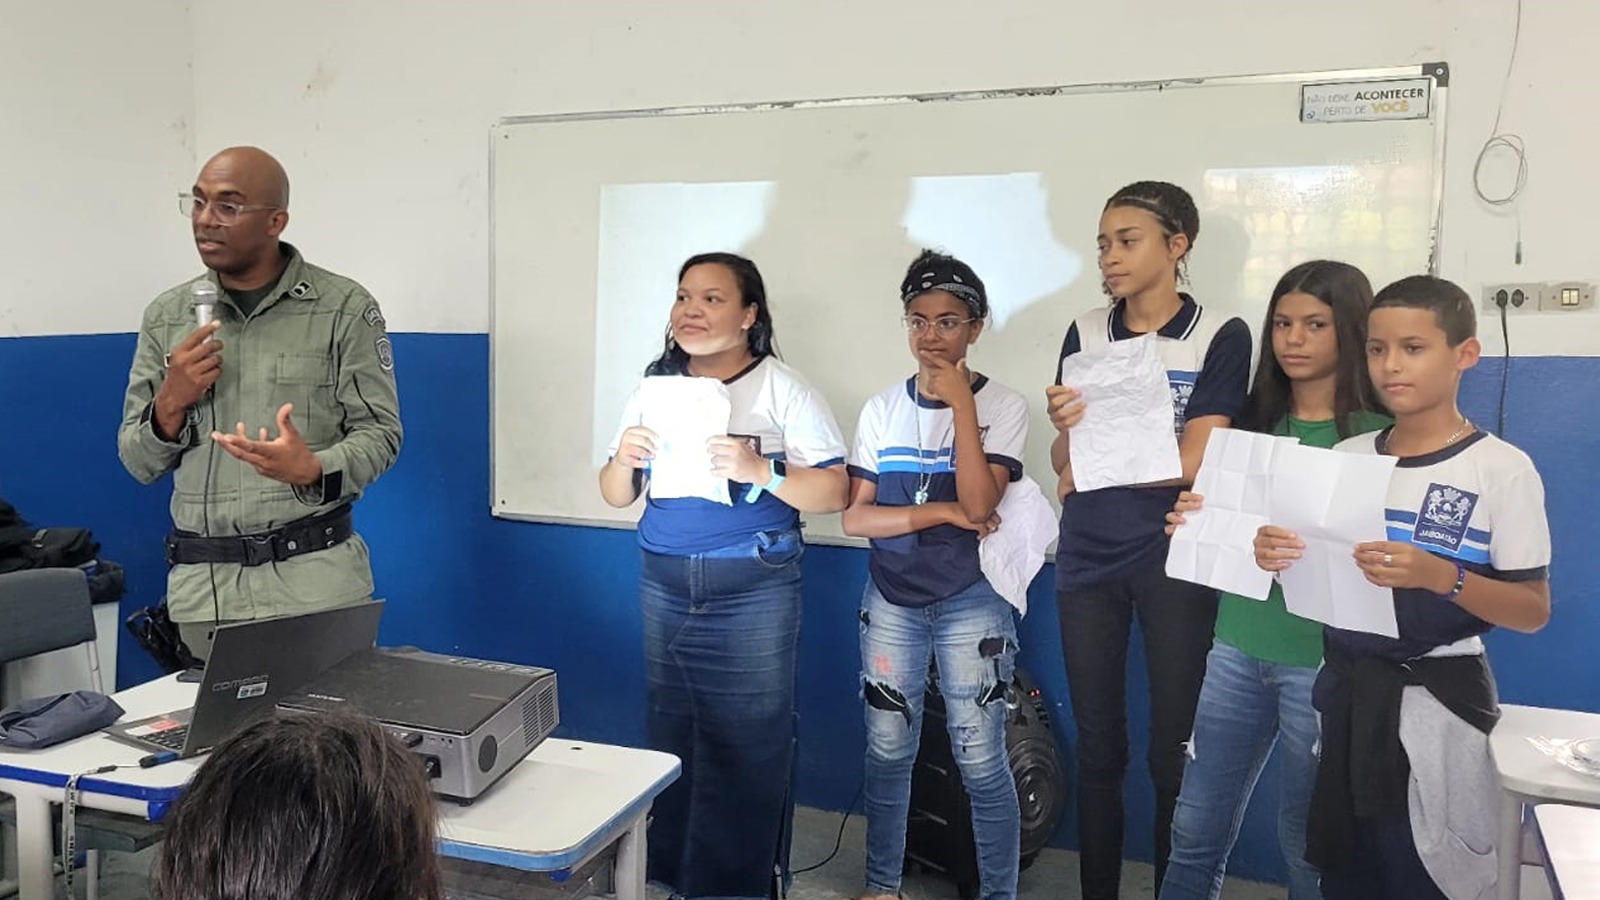 Escola Municipal José Carlos Ribeiro Promove Palestra de Prevenção ao Bullying com a Patrulha Escolar da Polícia Militar